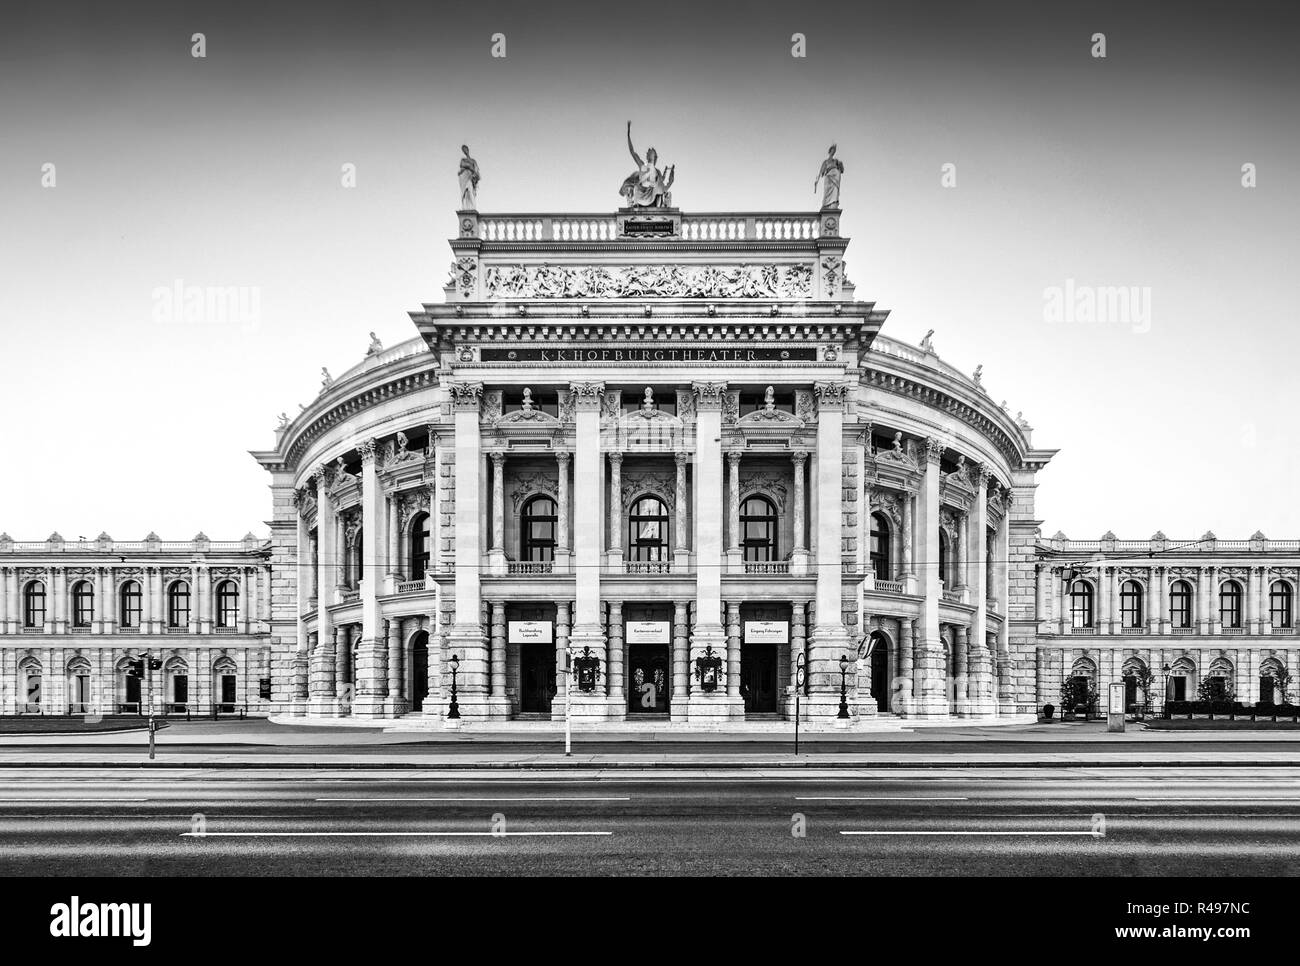 Belle vue de la ville historique de Burgtheater (le Théâtre de la cour impériale) avec le célèbre Wiener Ringstrasse de Vienne, Autriche Banque D'Images